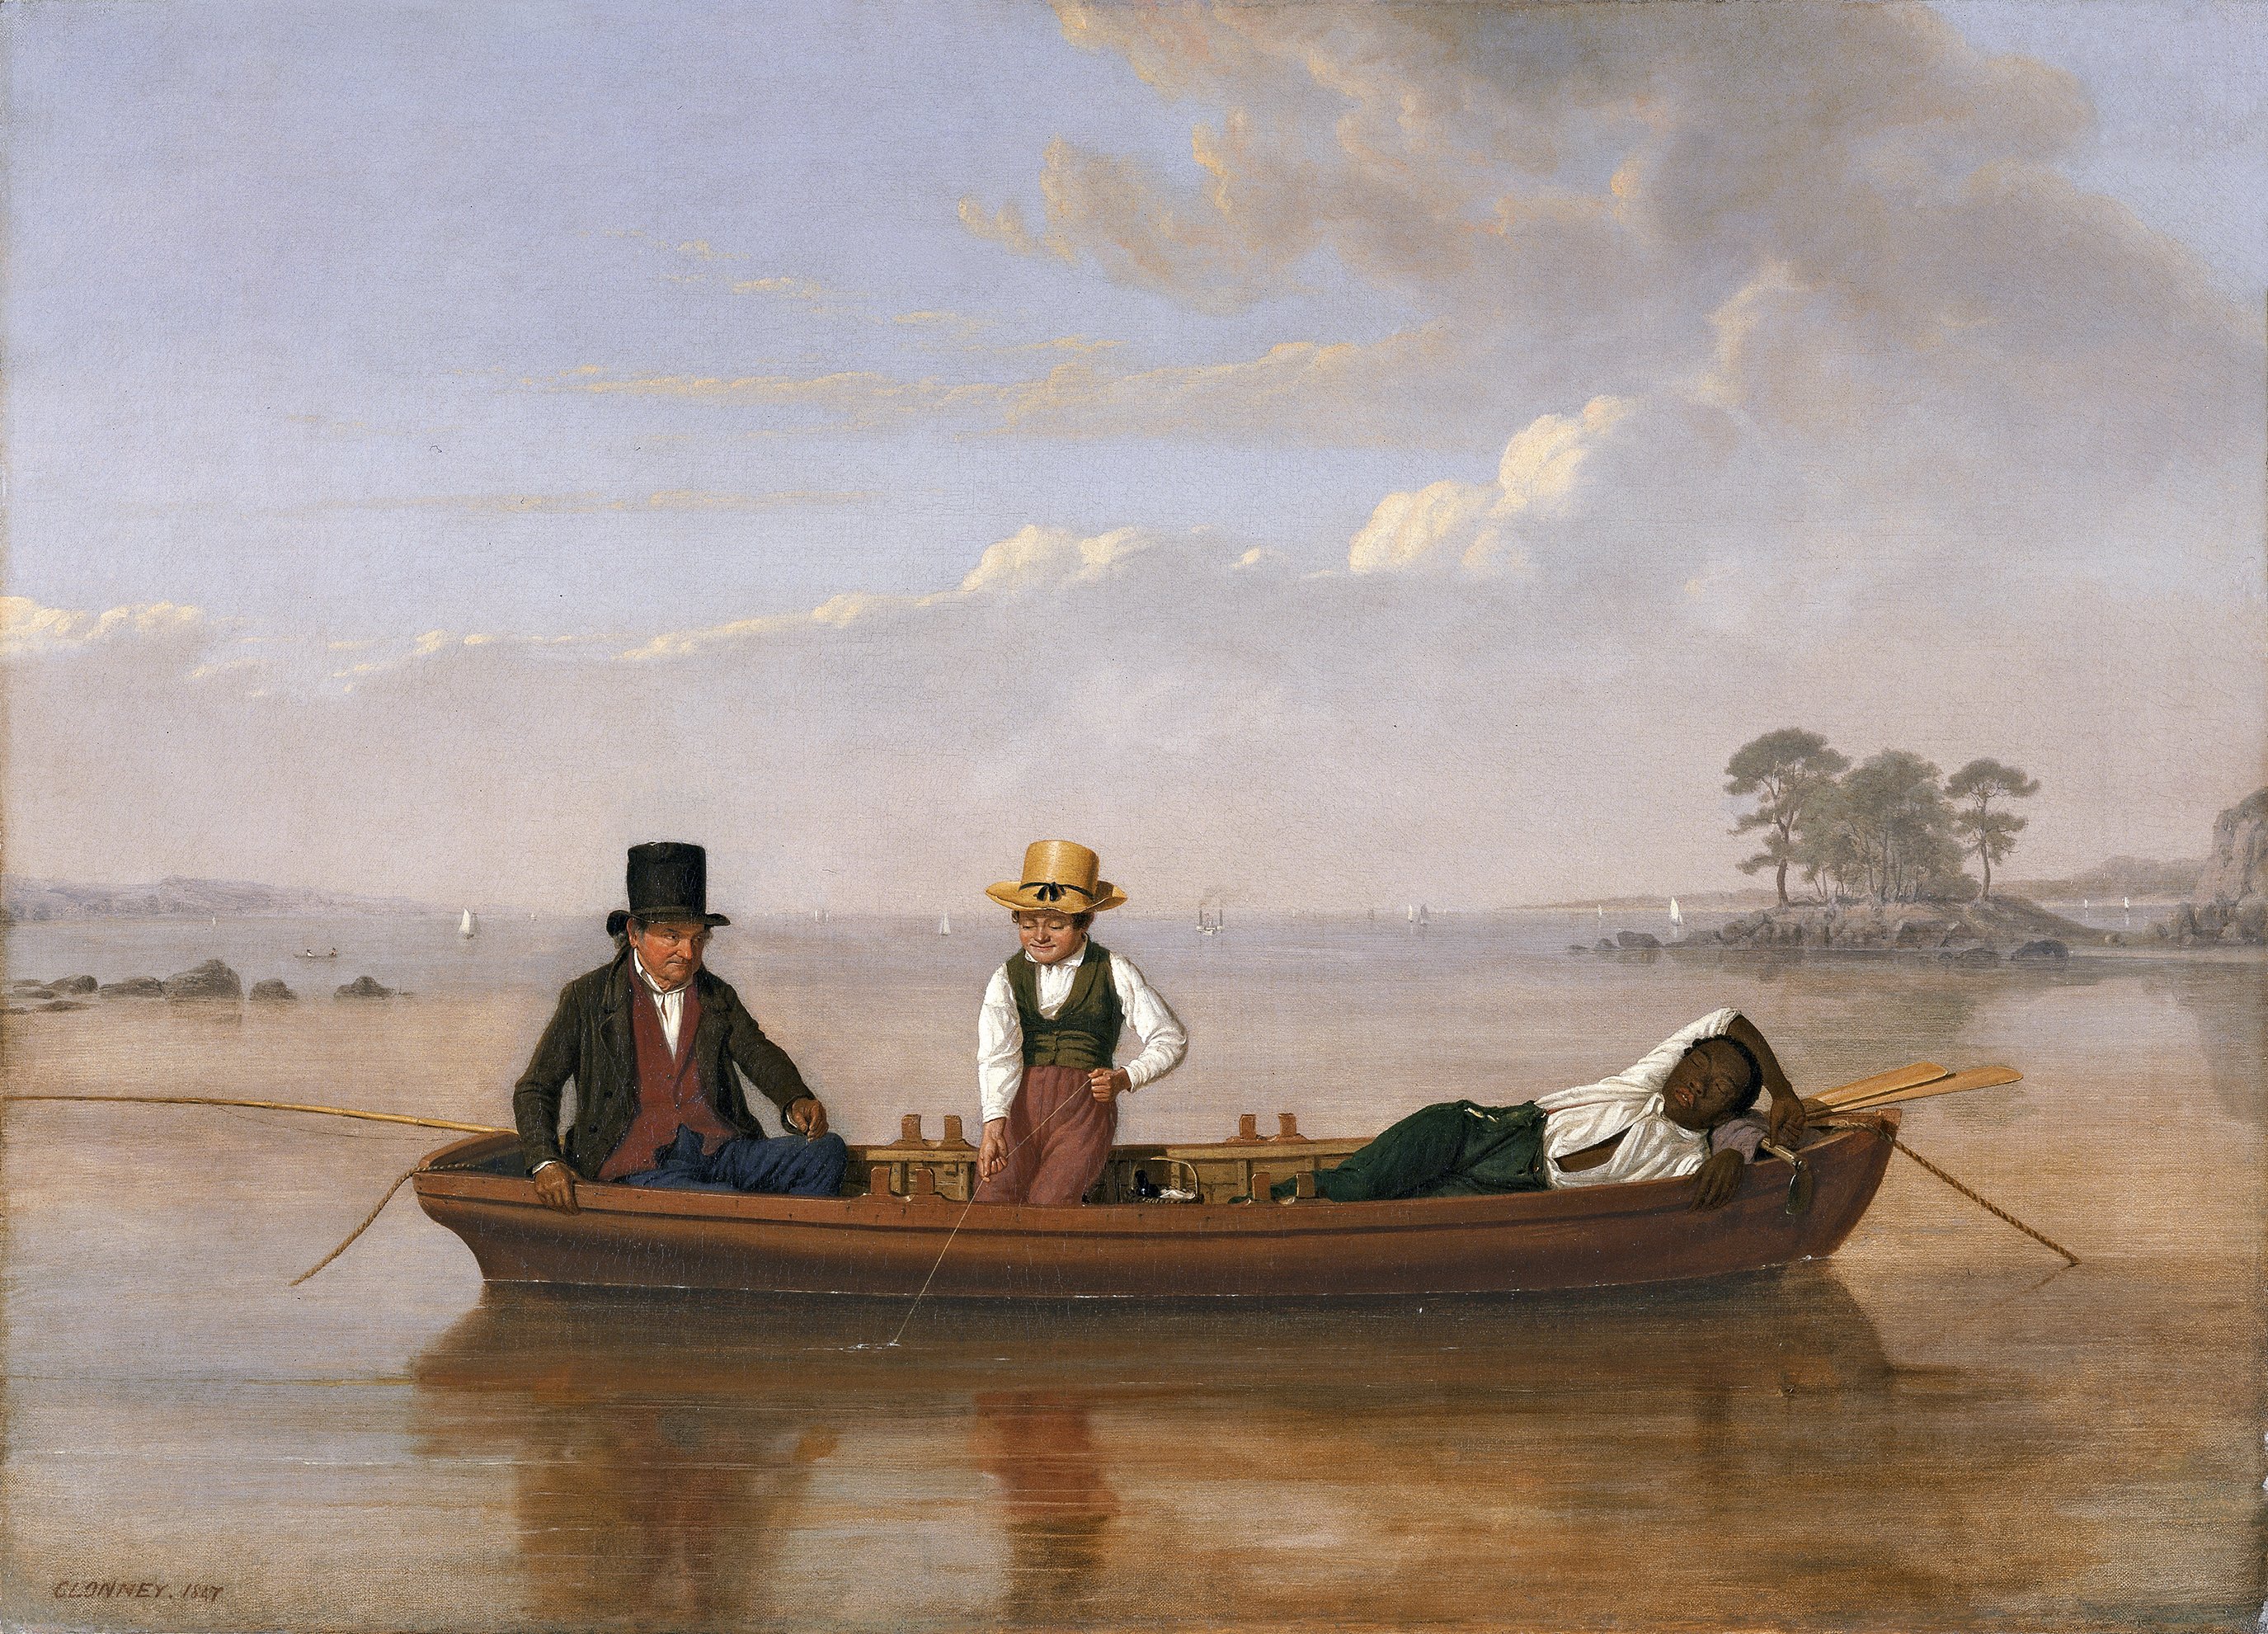 ニューロシェル沖ロングアイランド湾の釣り仲間 by James Goodwyn Clonney - 1847年 - 66 x 92.7 cm 